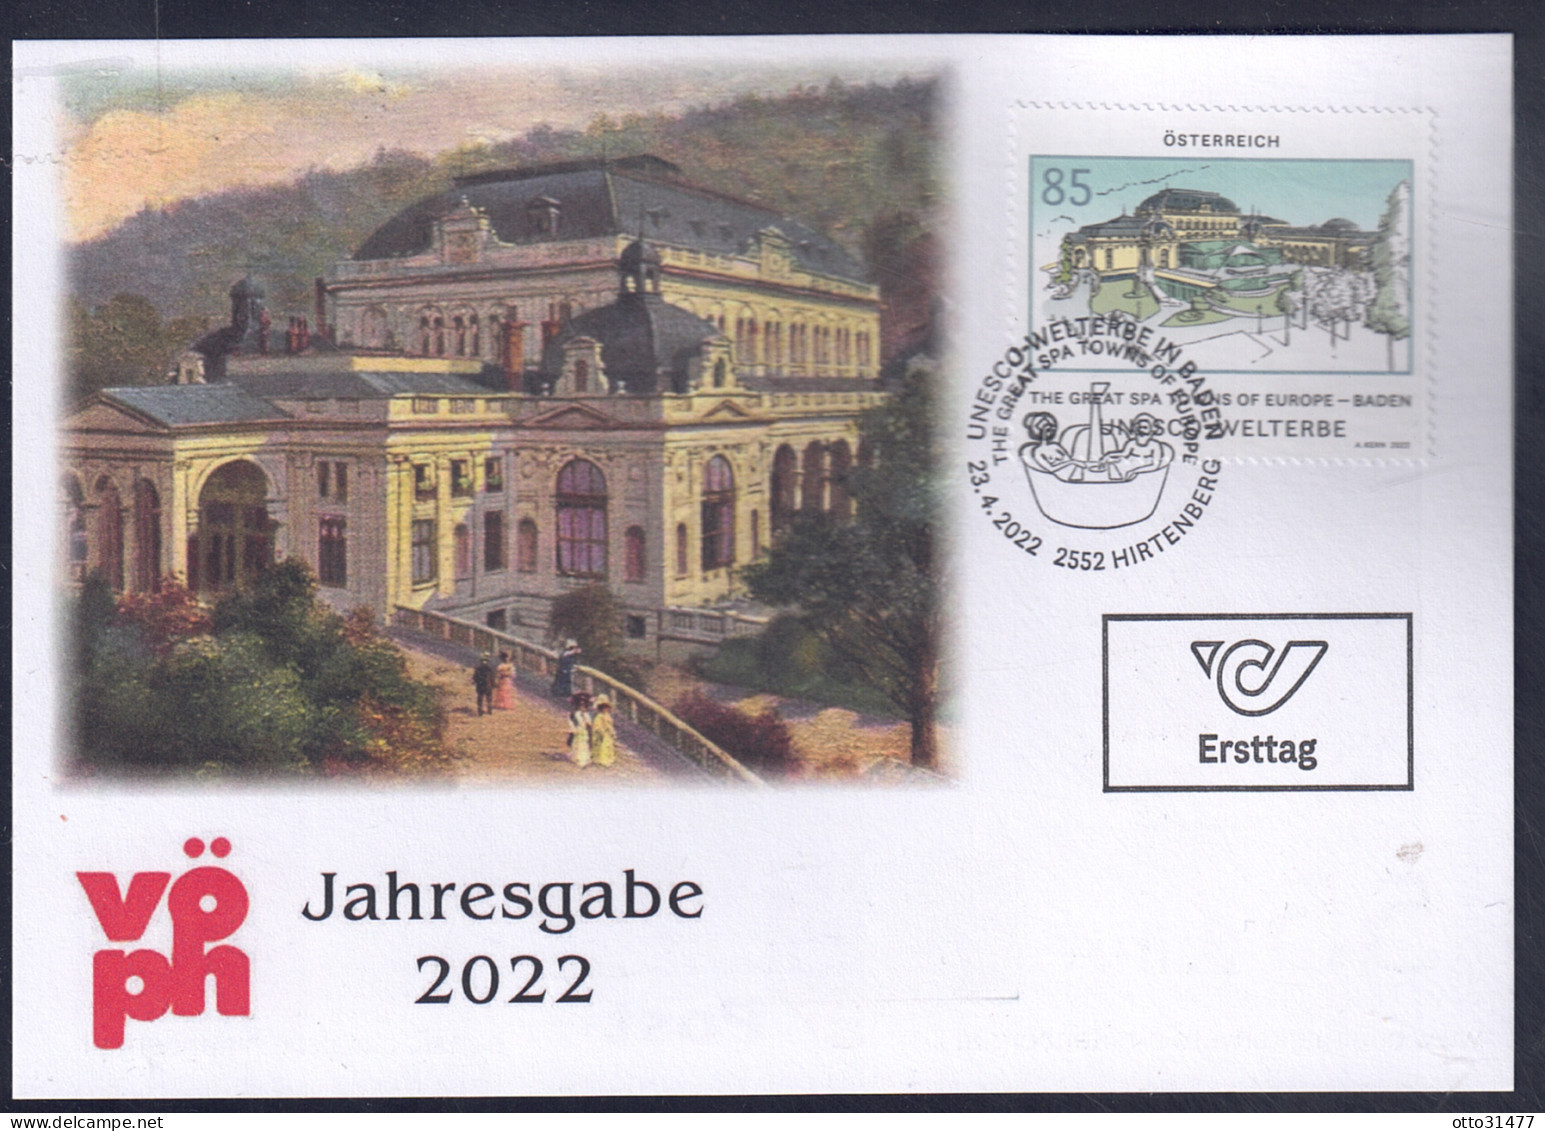 Österreich 2022 - VÖPH Jahresgabe - UNESCO-Welterbe In Baden - Covers & Documents